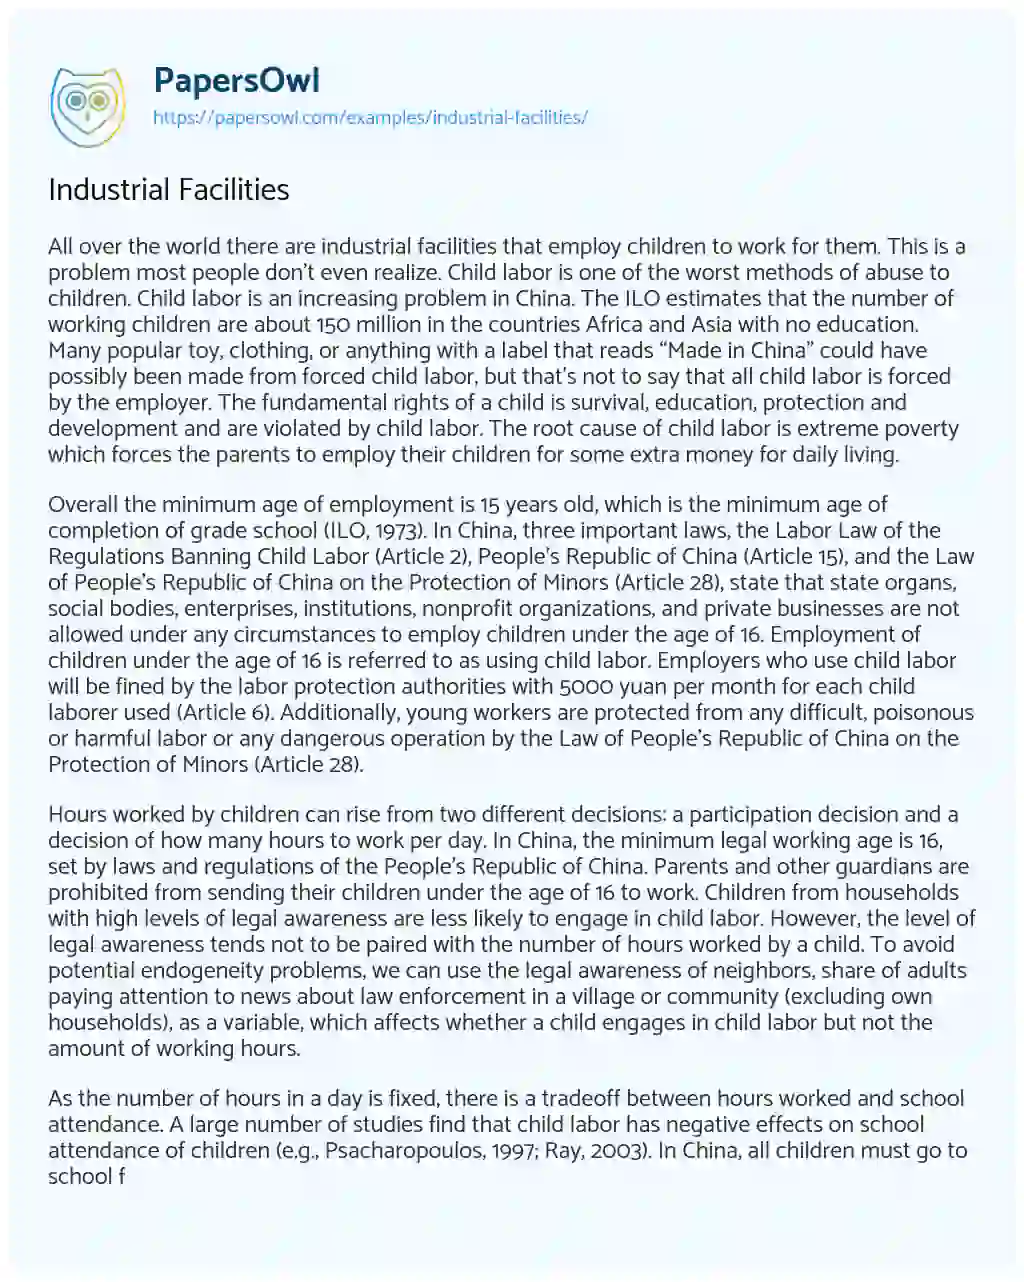 Industrial Facilities essay